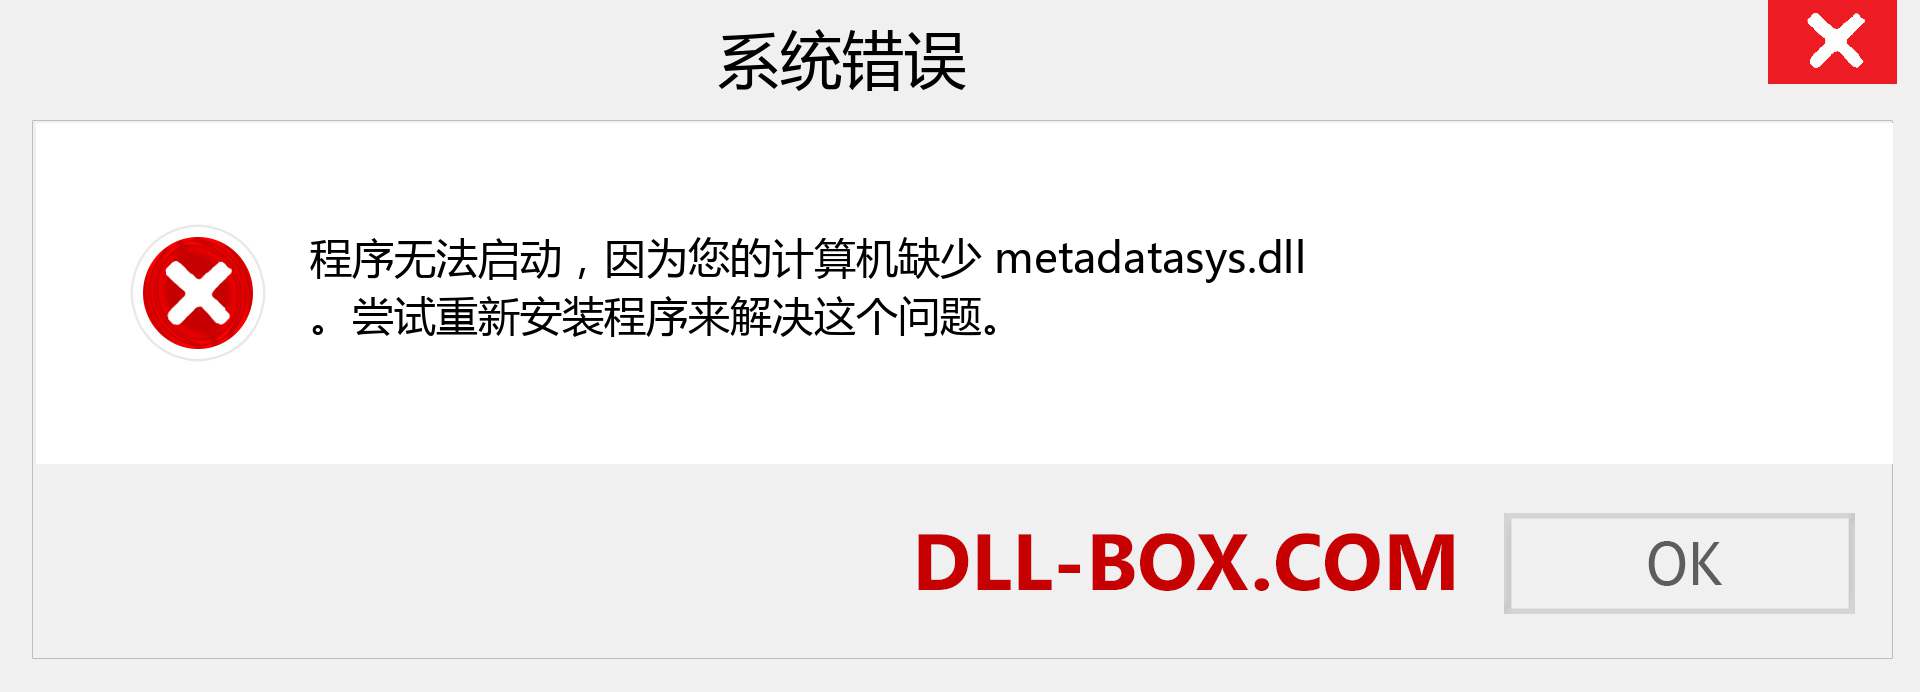 metadatasys.dll 文件丢失？。 适用于 Windows 7、8、10 的下载 - 修复 Windows、照片、图像上的 metadatasys dll 丢失错误